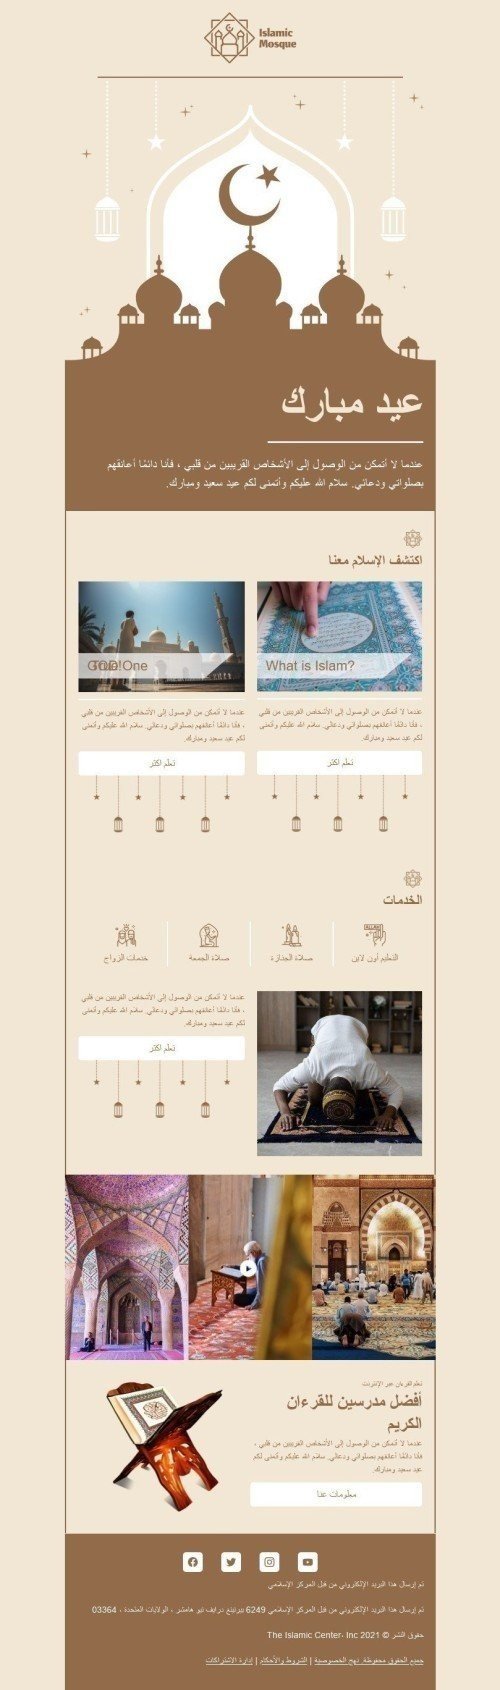 Modello Email Kurban Bayrami «Moschea islamica» per il settore industriale di No profit e beneficenza Visualizzazione mobile